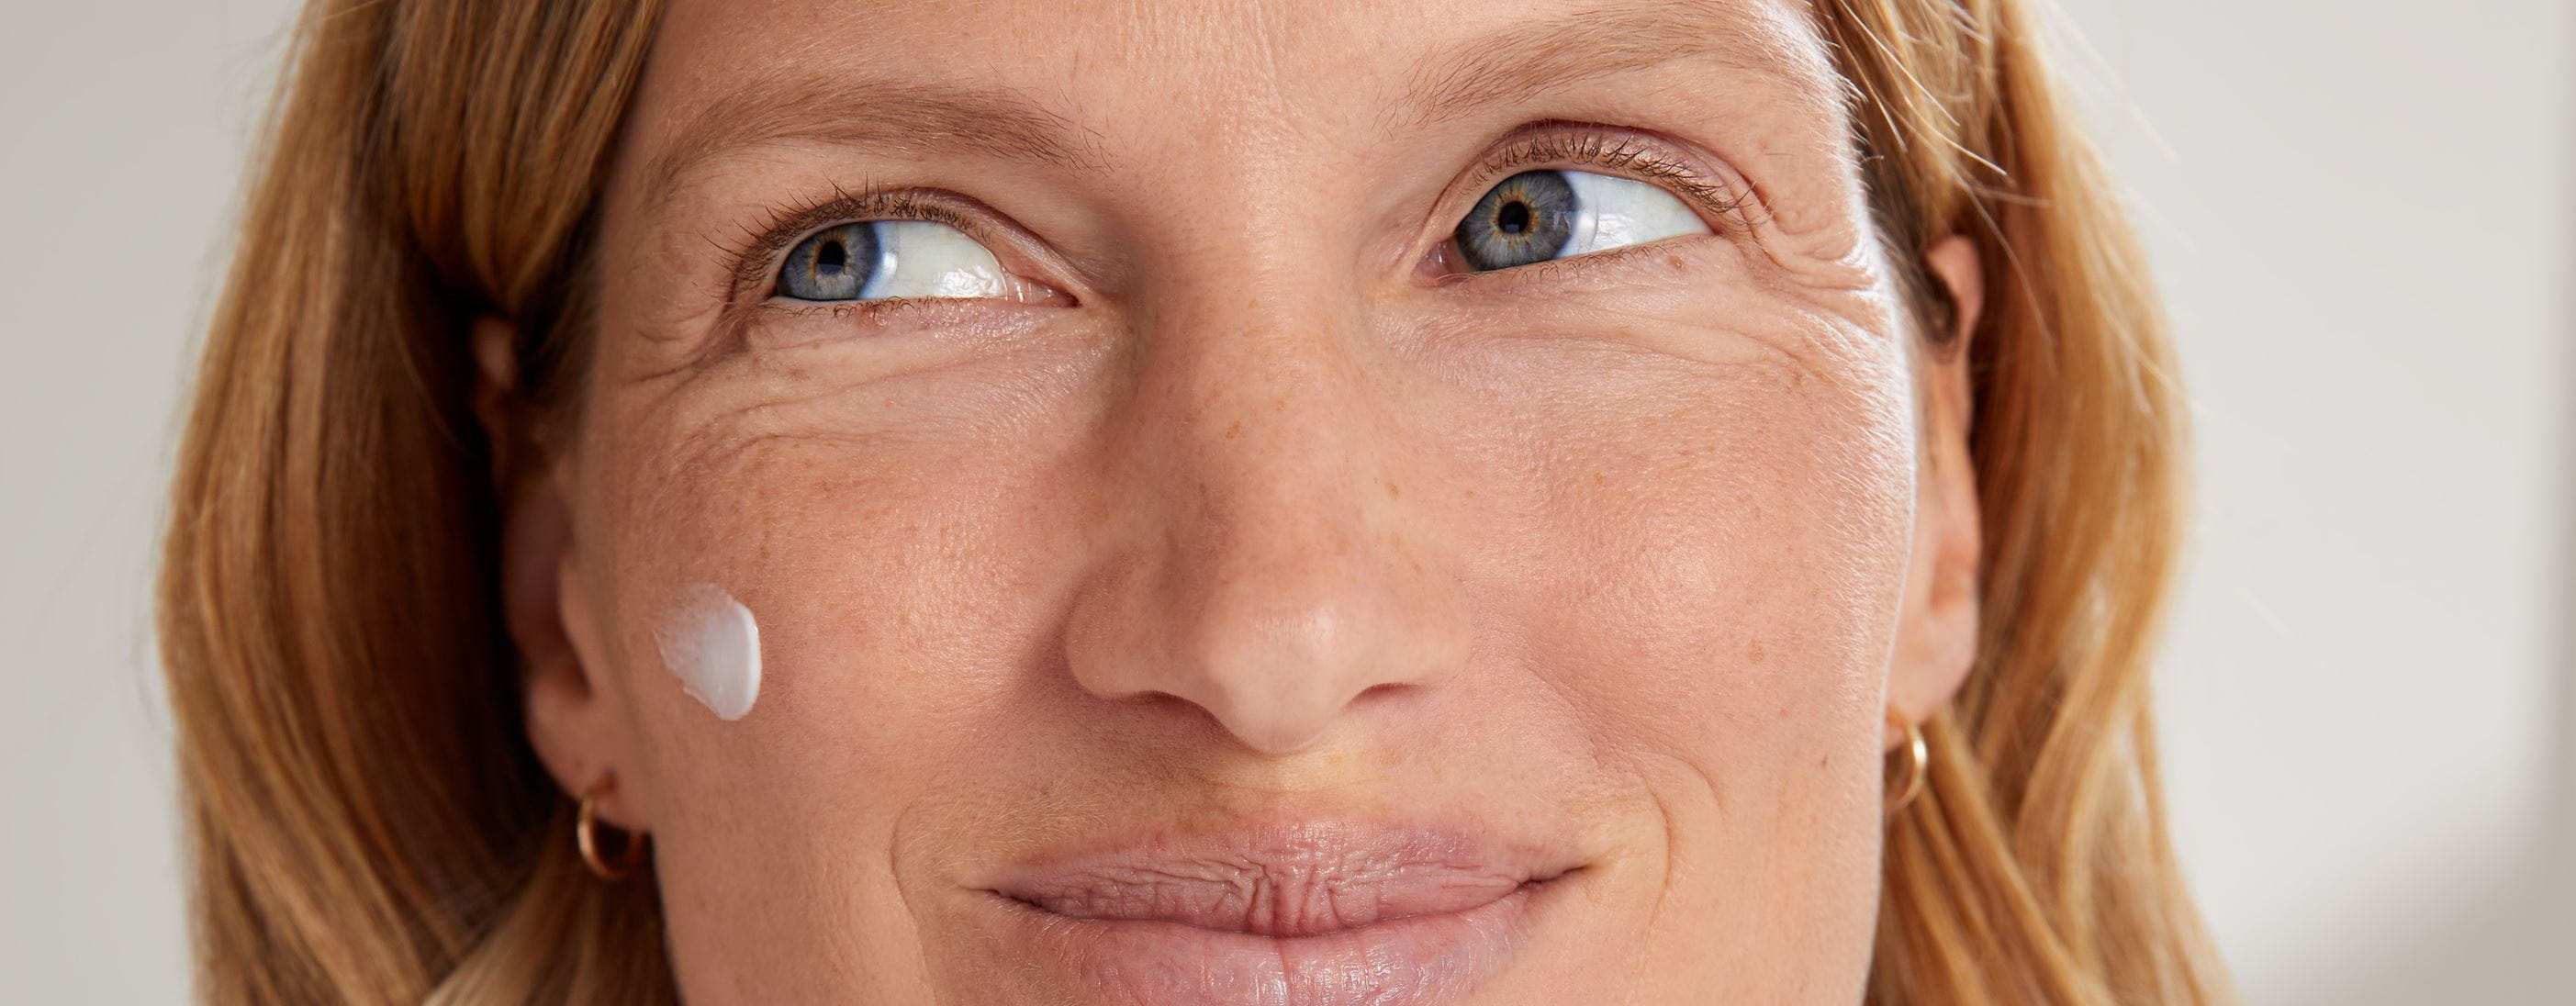 Frau hält eine Nivea Q10 Anti-Falten-Gesichtscreme in der Hand